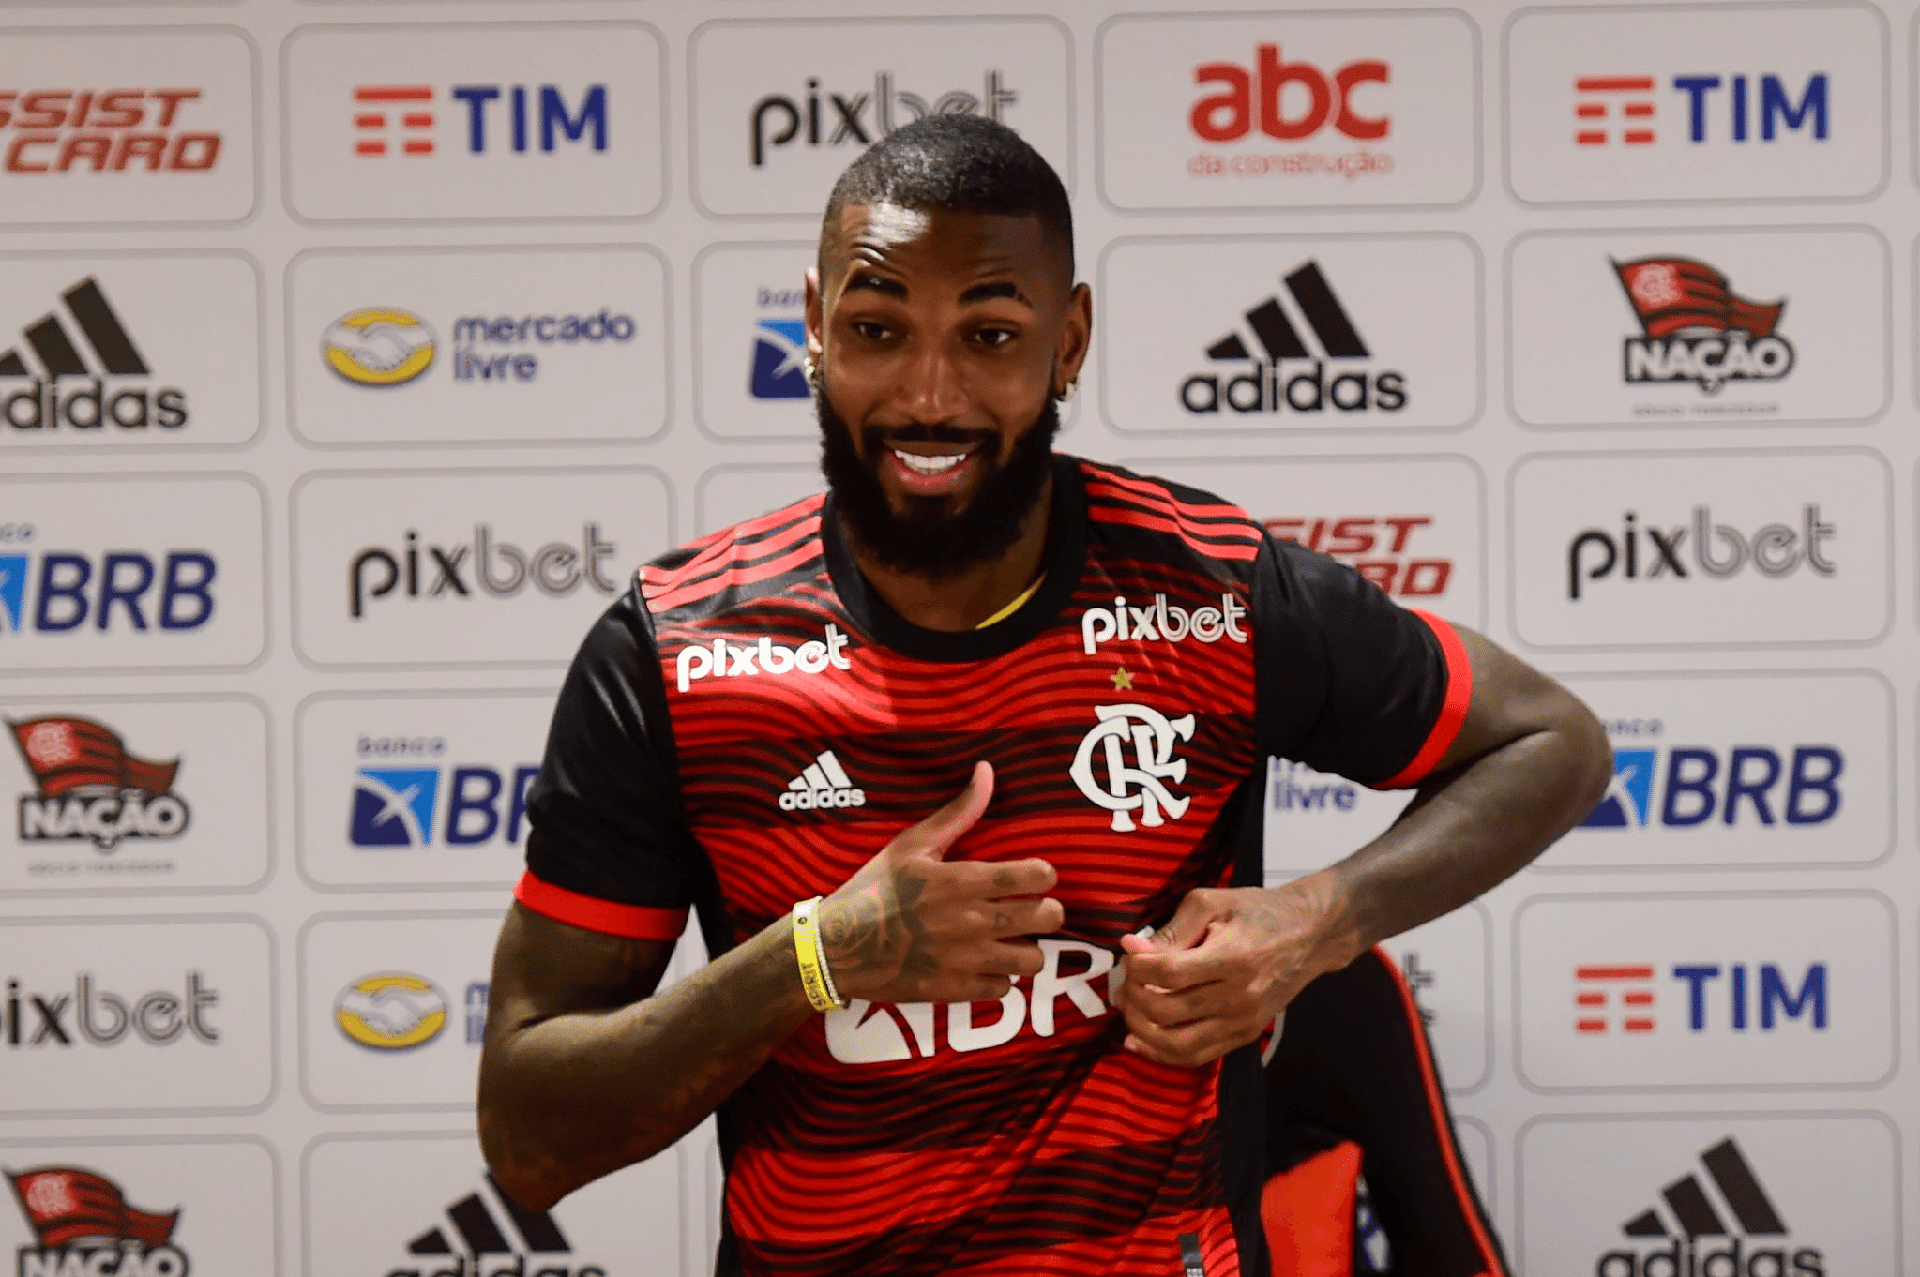 Flamengo é o 8° clube que mais gastou em novos jogadores - Rádio